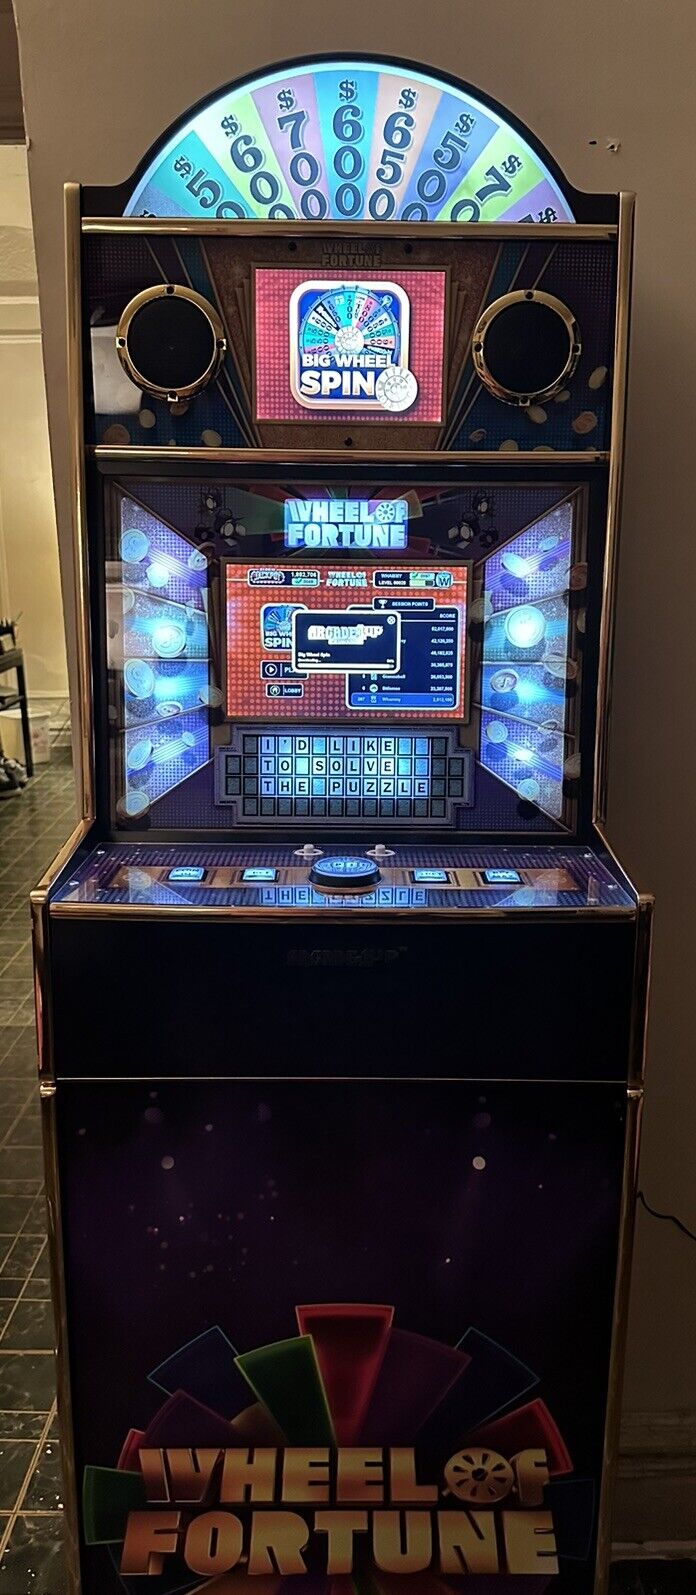 Arcade1up Wheel Of Fortune CasinoCade Deluxe Arcade .